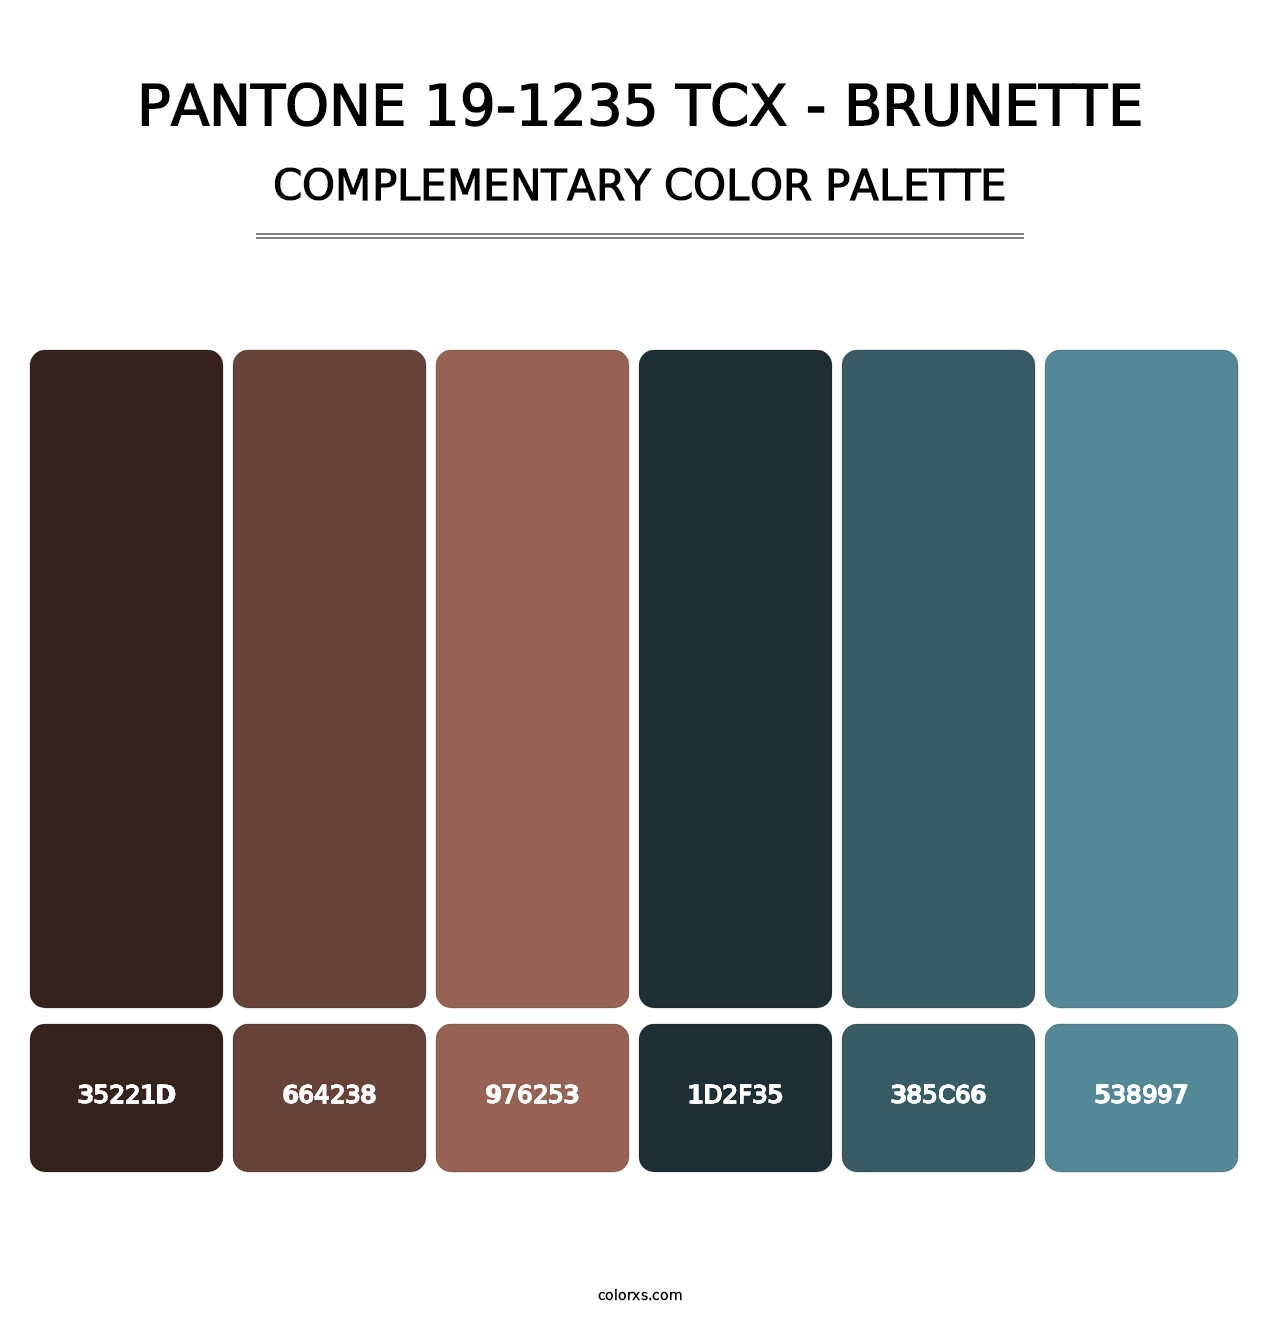 PANTONE 19-1235 TCX - Brunette - Complementary Color Palette